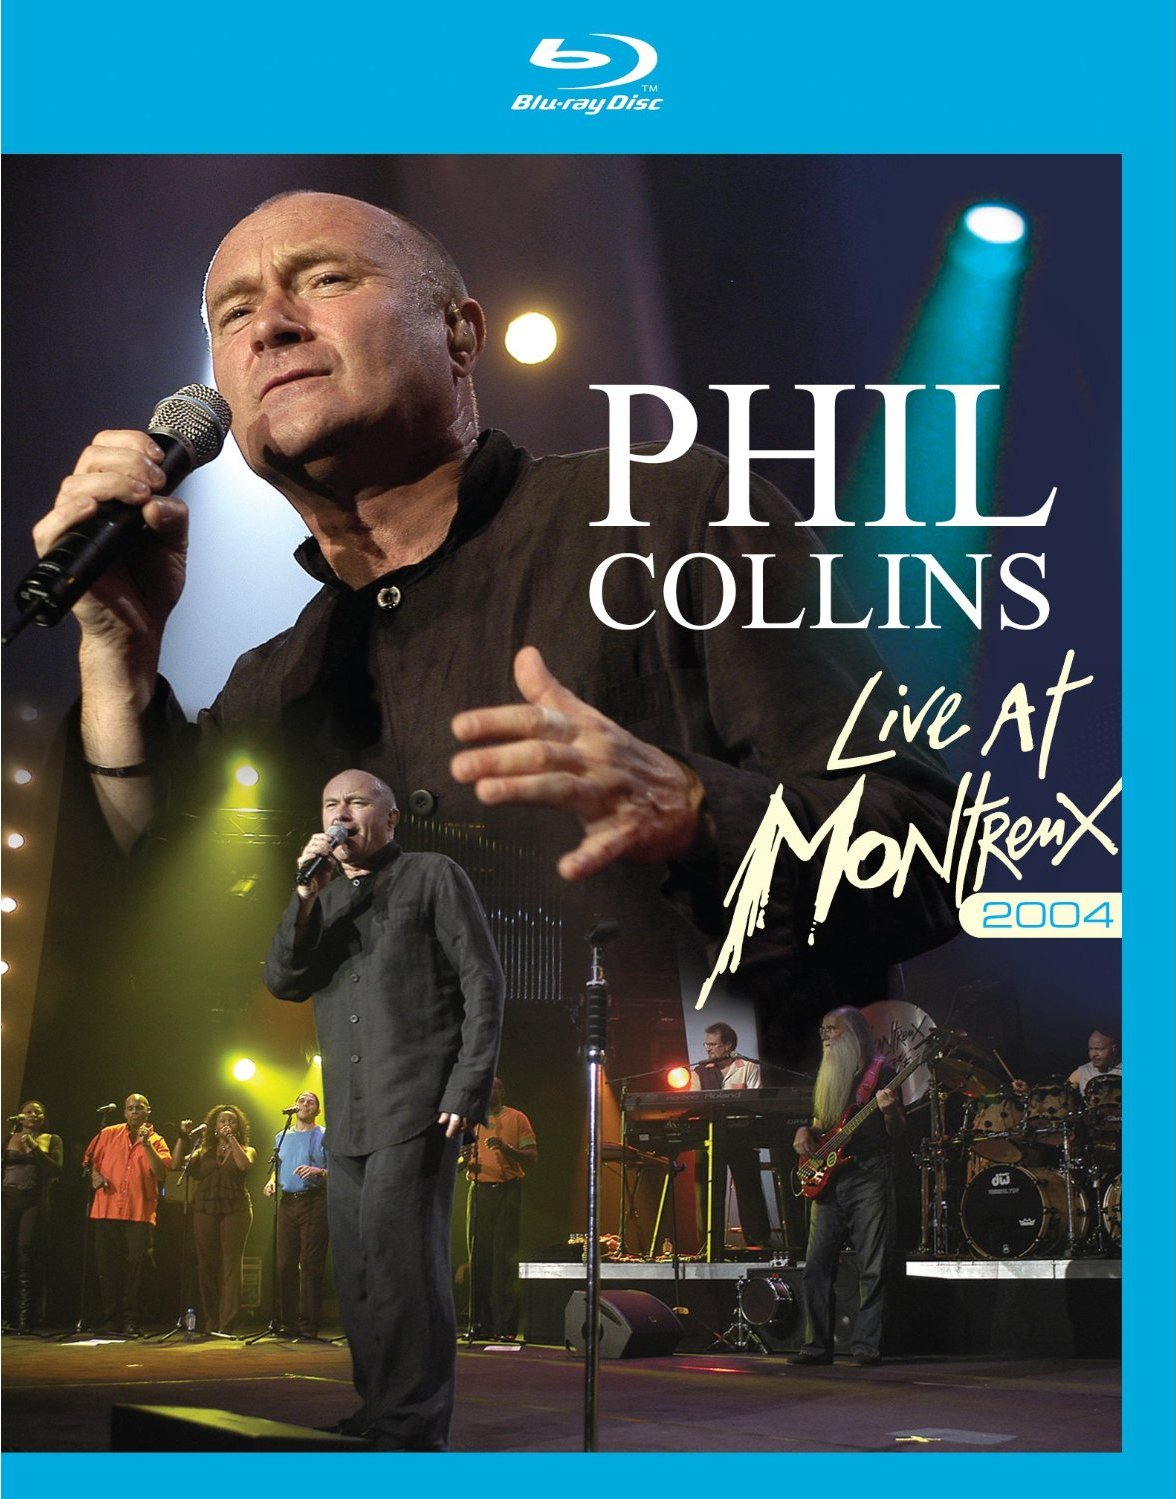 http://3.bp.blogspot.com/-c8ftj116ktI/T58QE0yOd4I/AAAAAAAAGUA/wGfUID8Zkdg/s1600/Phil+Collins+Live+At+Montreux+%25282004%2529+BluRay+capa.jpg